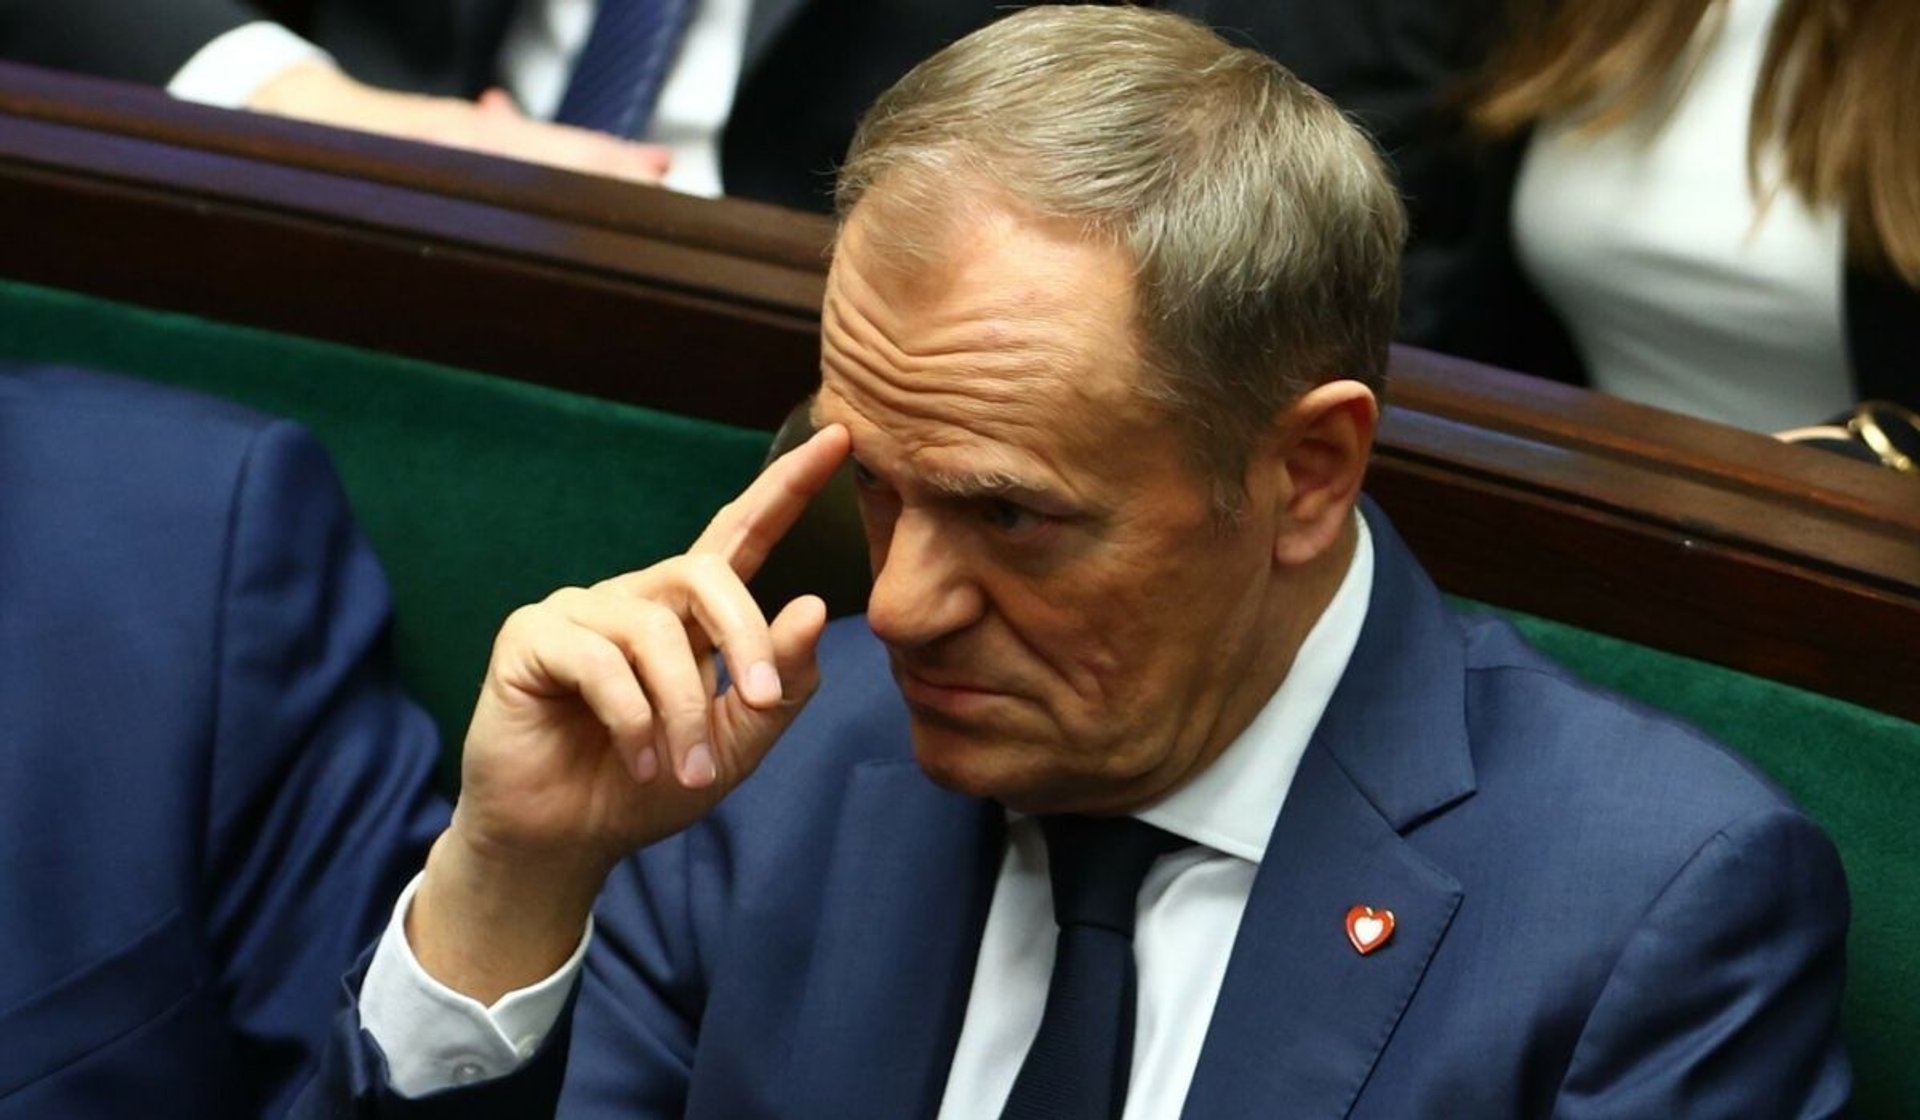 Donald Tusk o mały włos uniknął upadku, fot. Andrzej Iwanczuk/REPORTER/East News